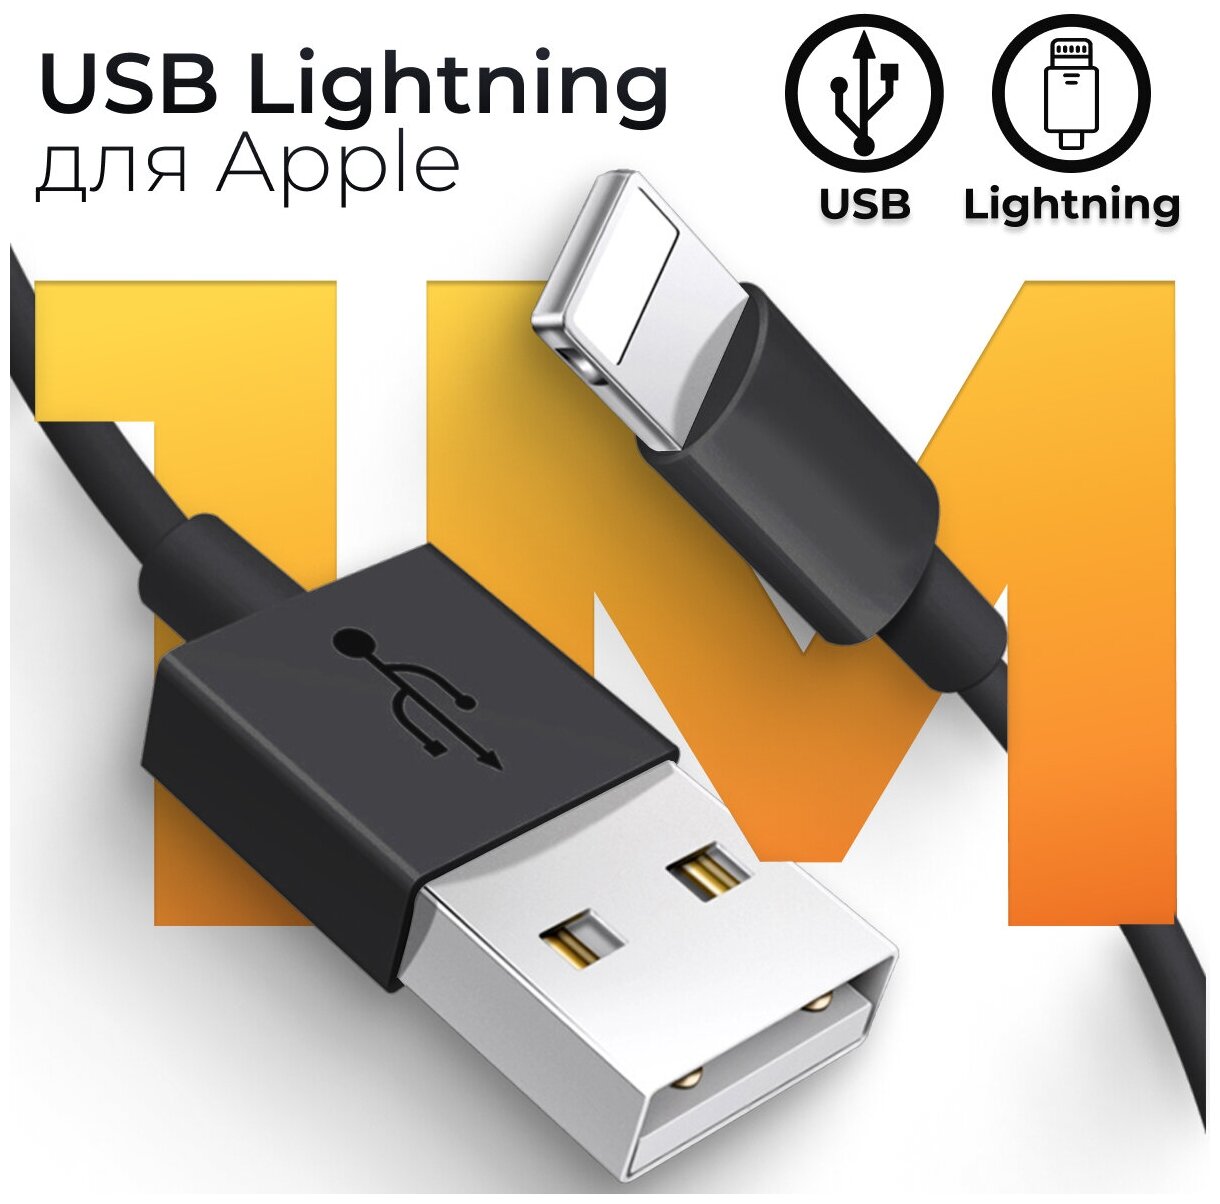 Зарядный кабель Lightning для Apple iPhone, iPad и AirPods / ЮСБ провод для Эпл Айфон/ USB провод лайтнинг для Айфон, 1 метр (Черный)